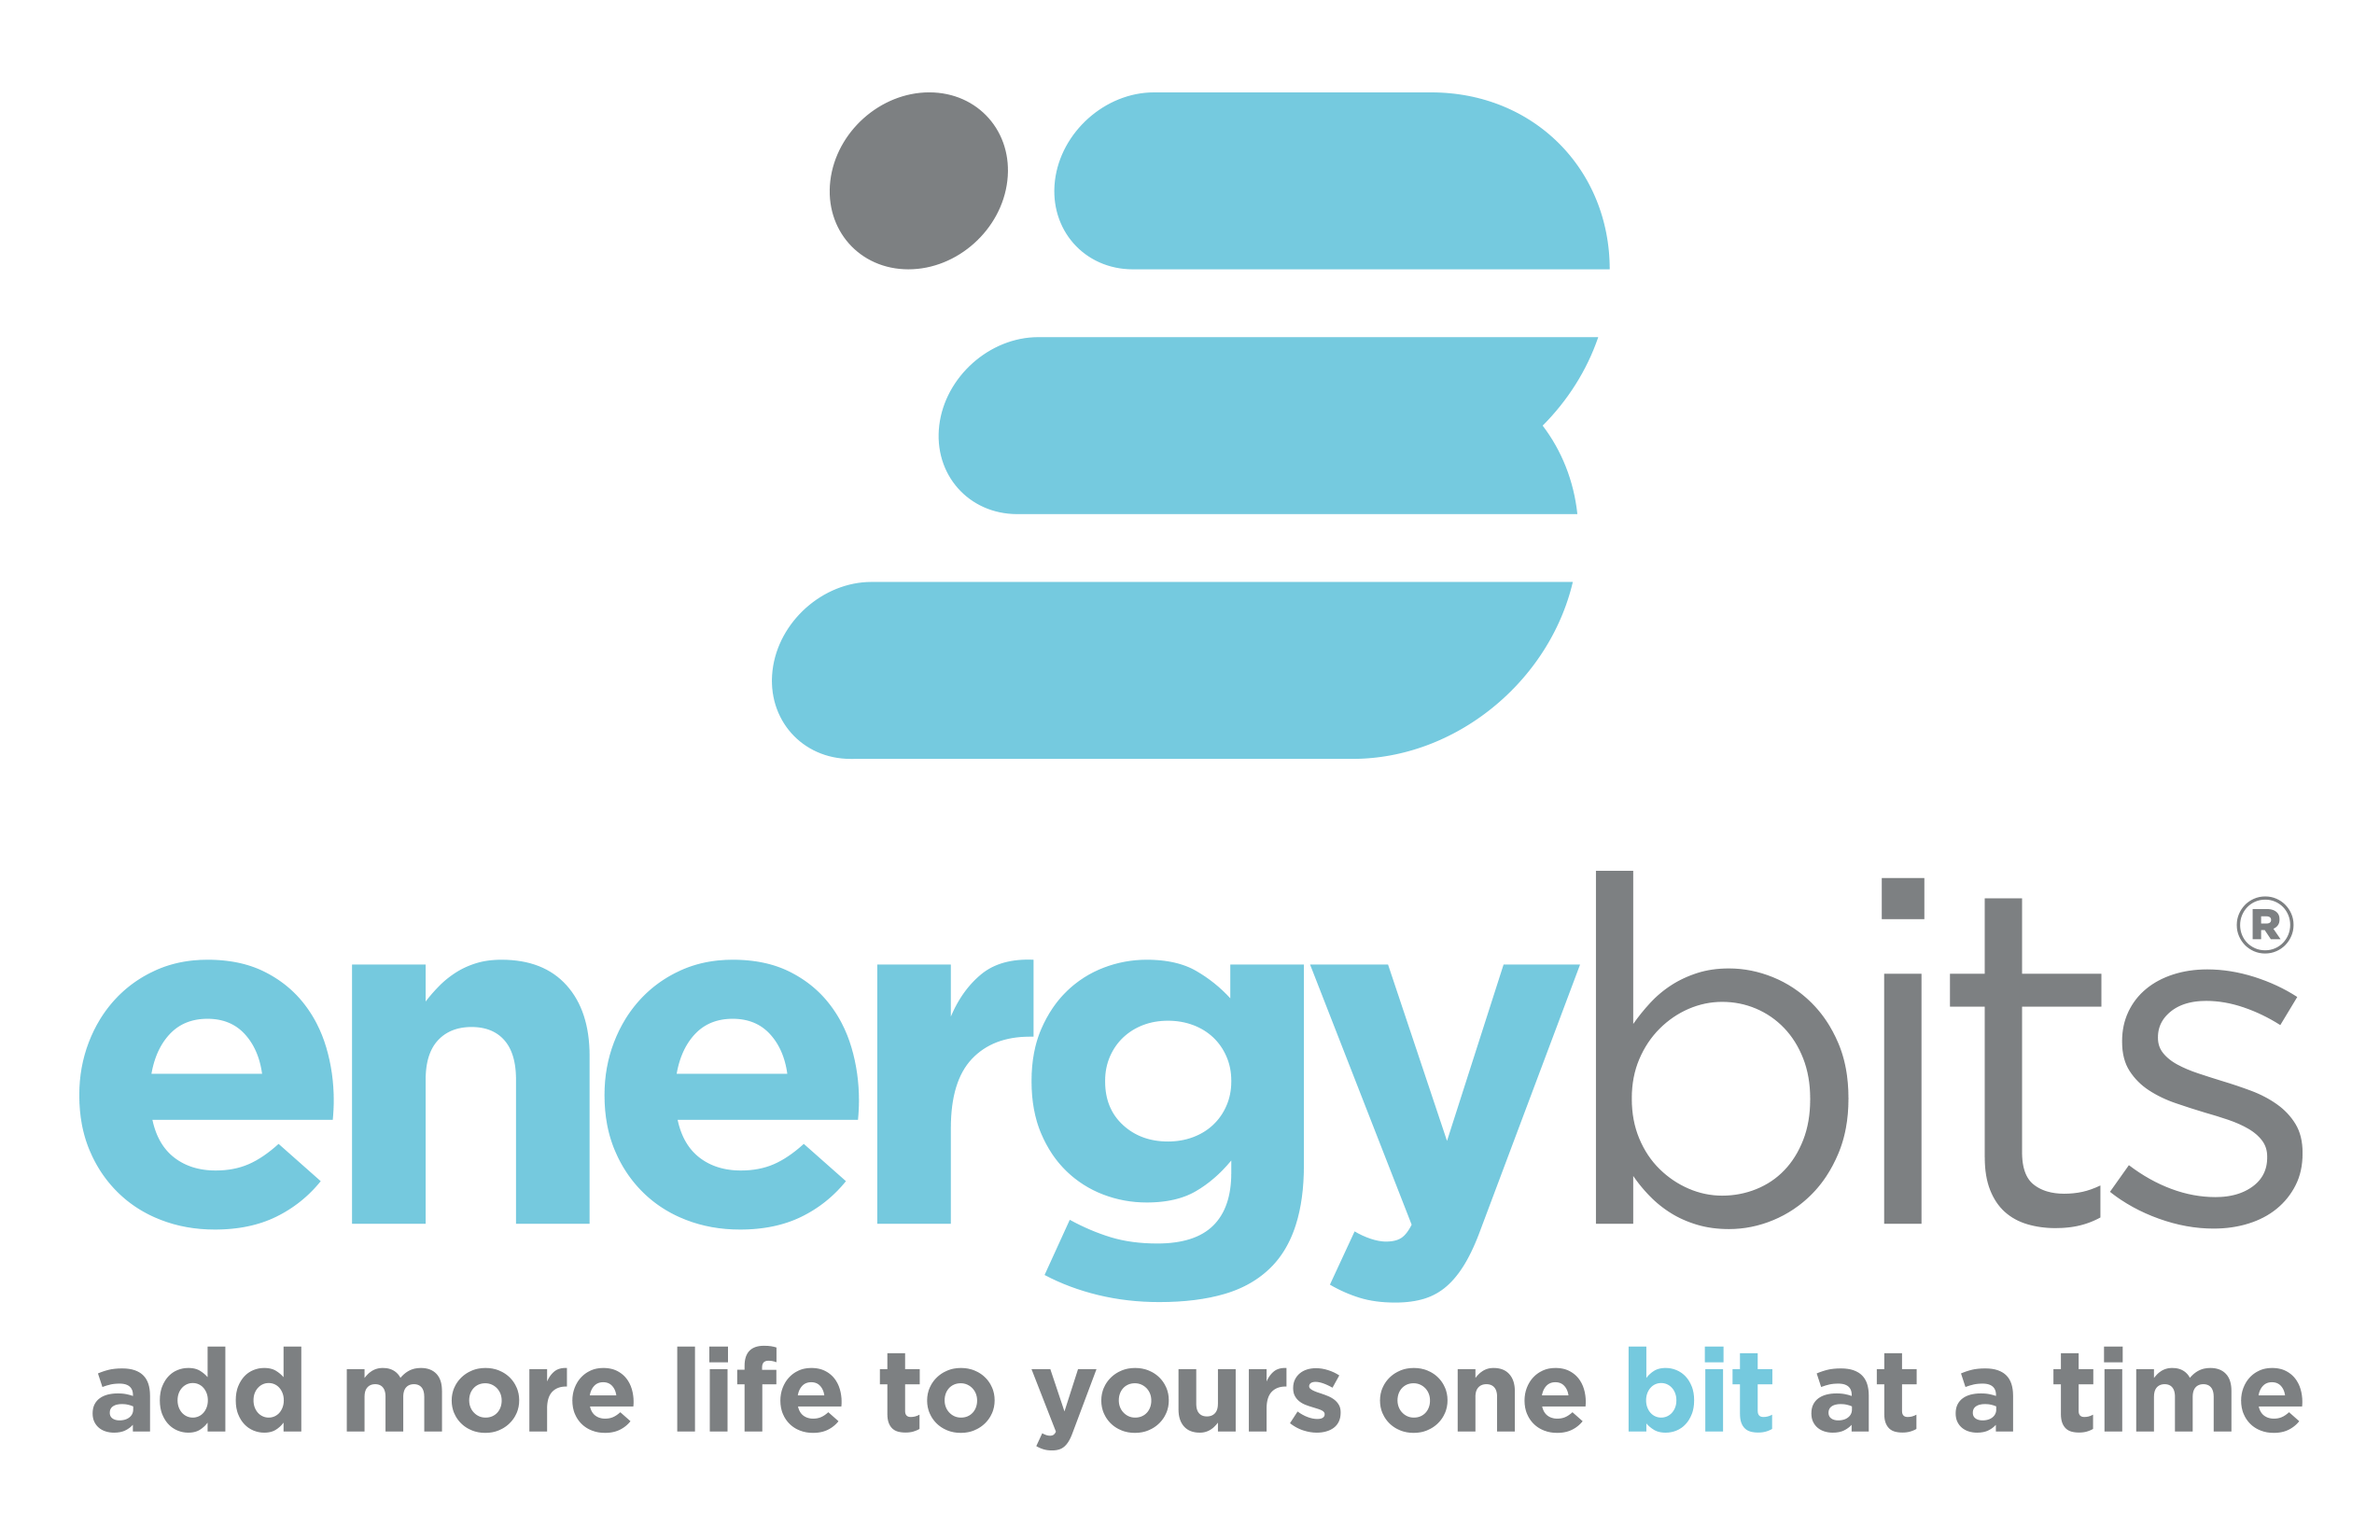 ENERGYbits Logo